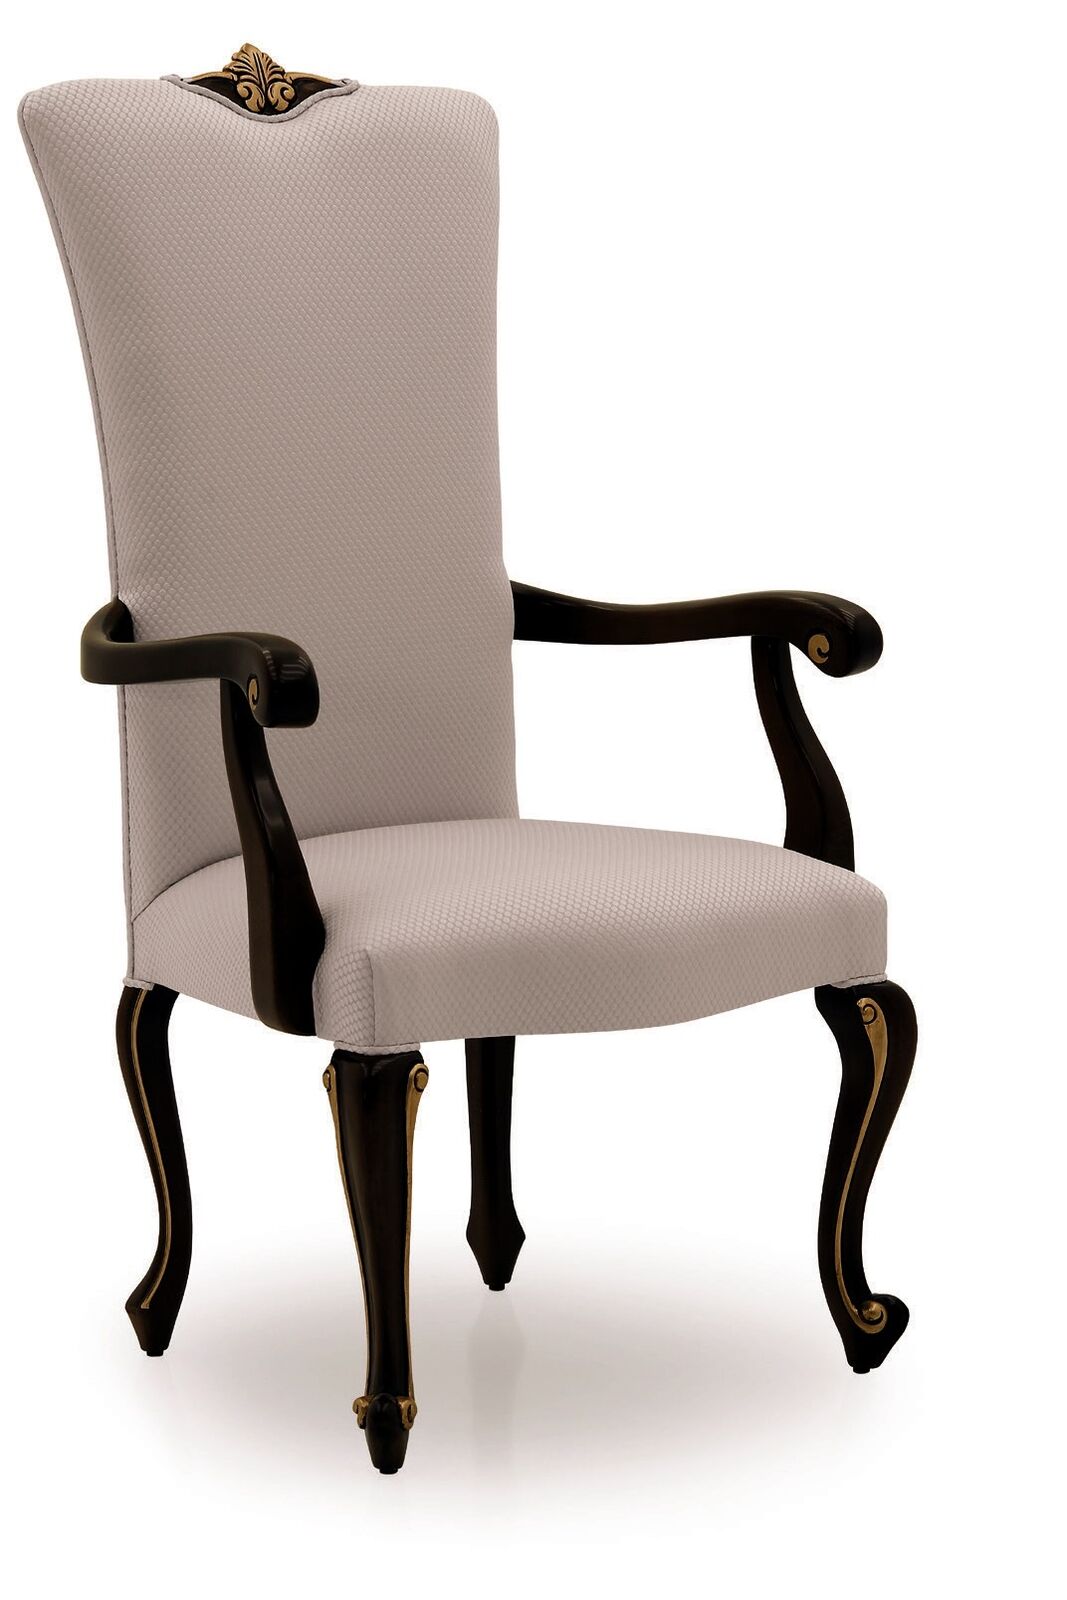 Esszimmer Designer Holz Modern Lehnstuhl Braun Luxus Stuhl Stühle Sessel Beige